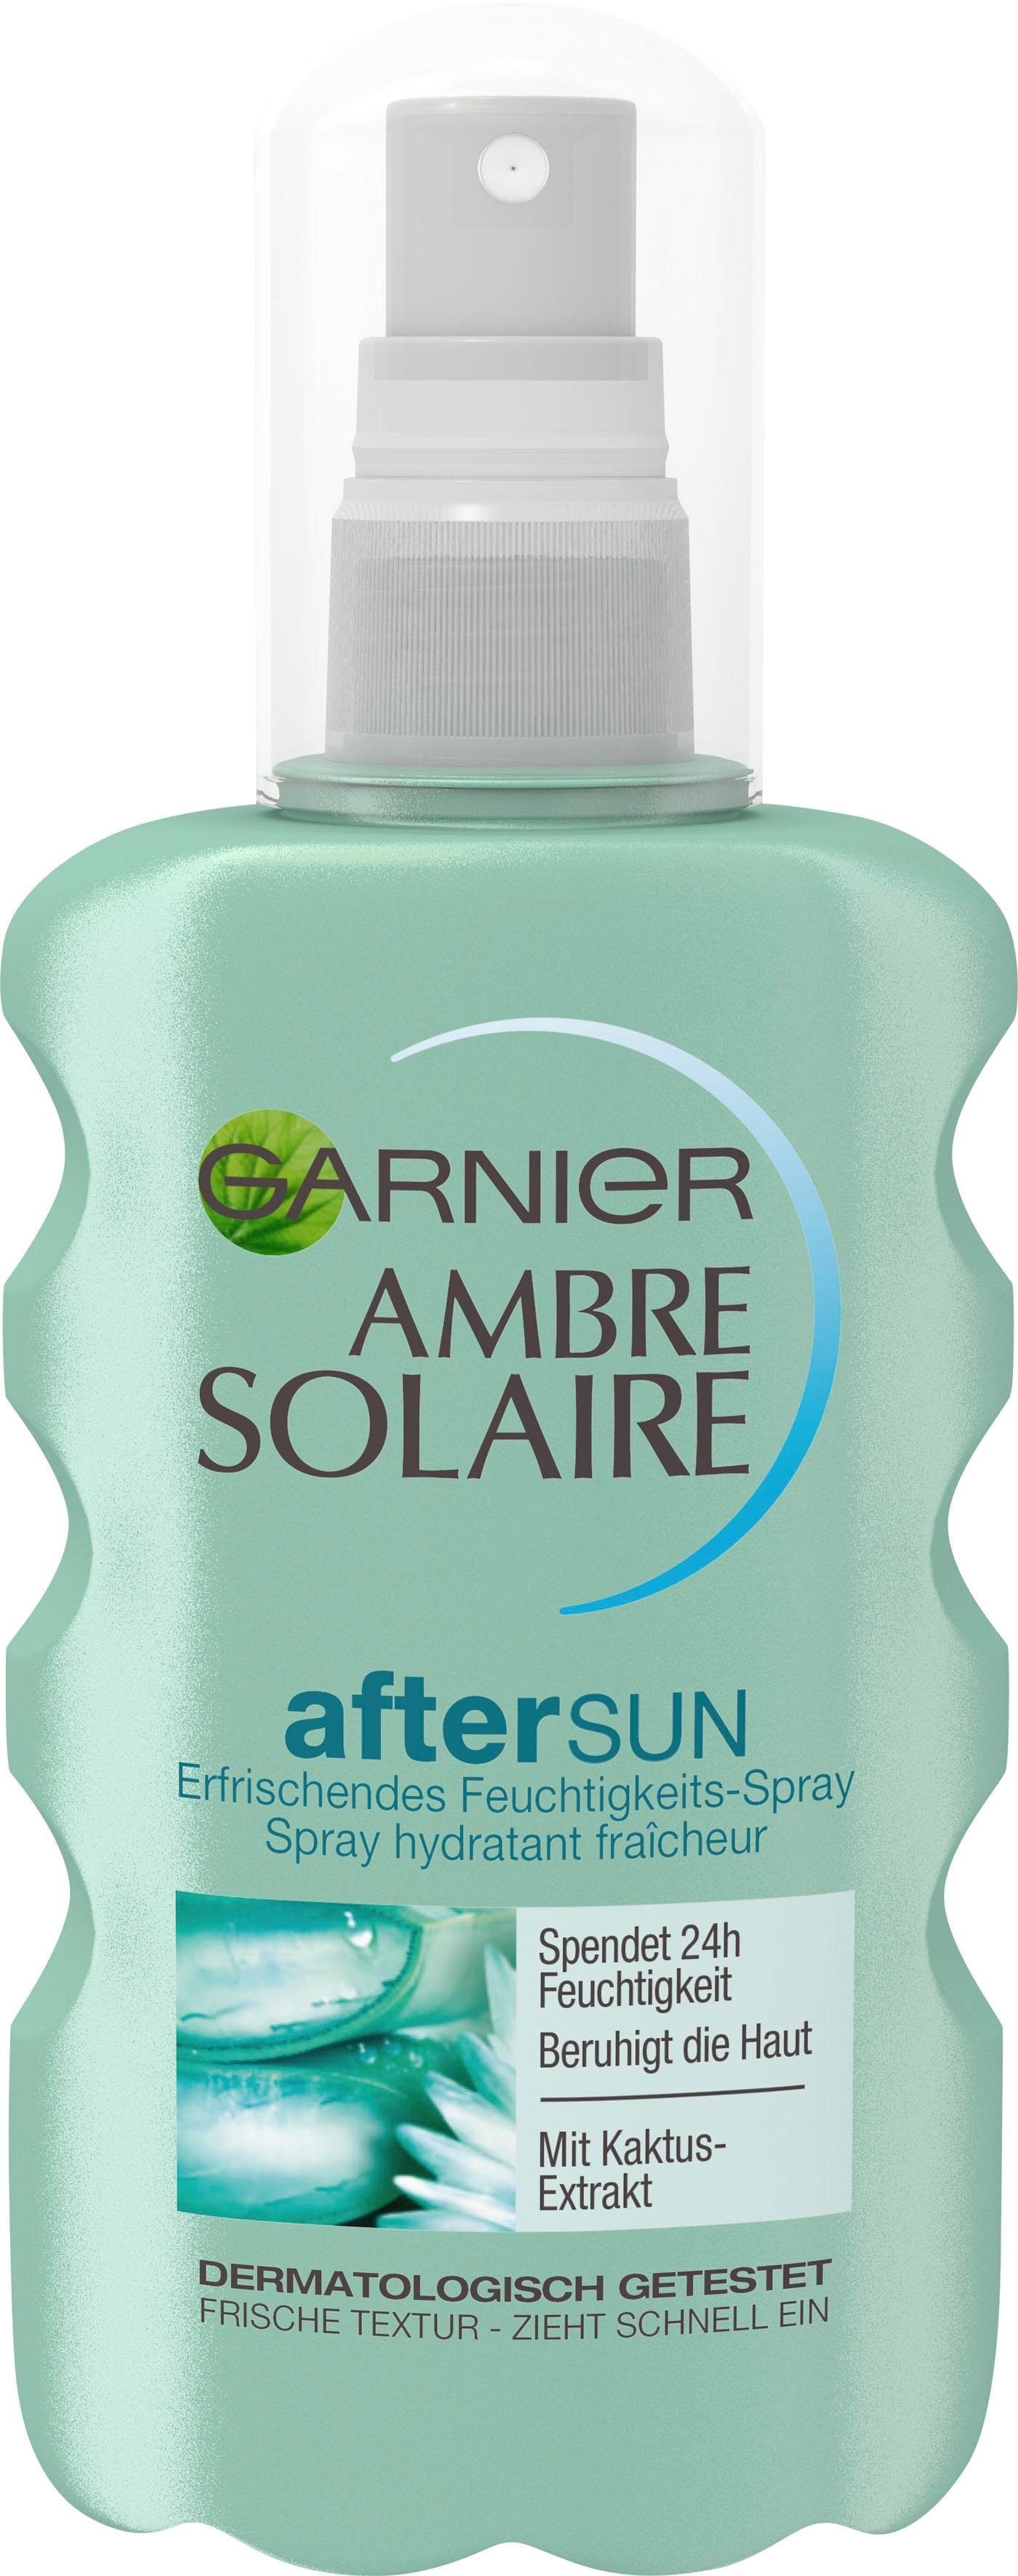 GARNIER After Ambre mit Feuchtigkeits-Après, Solaire Kaktus-Extrakt Sun-Spray